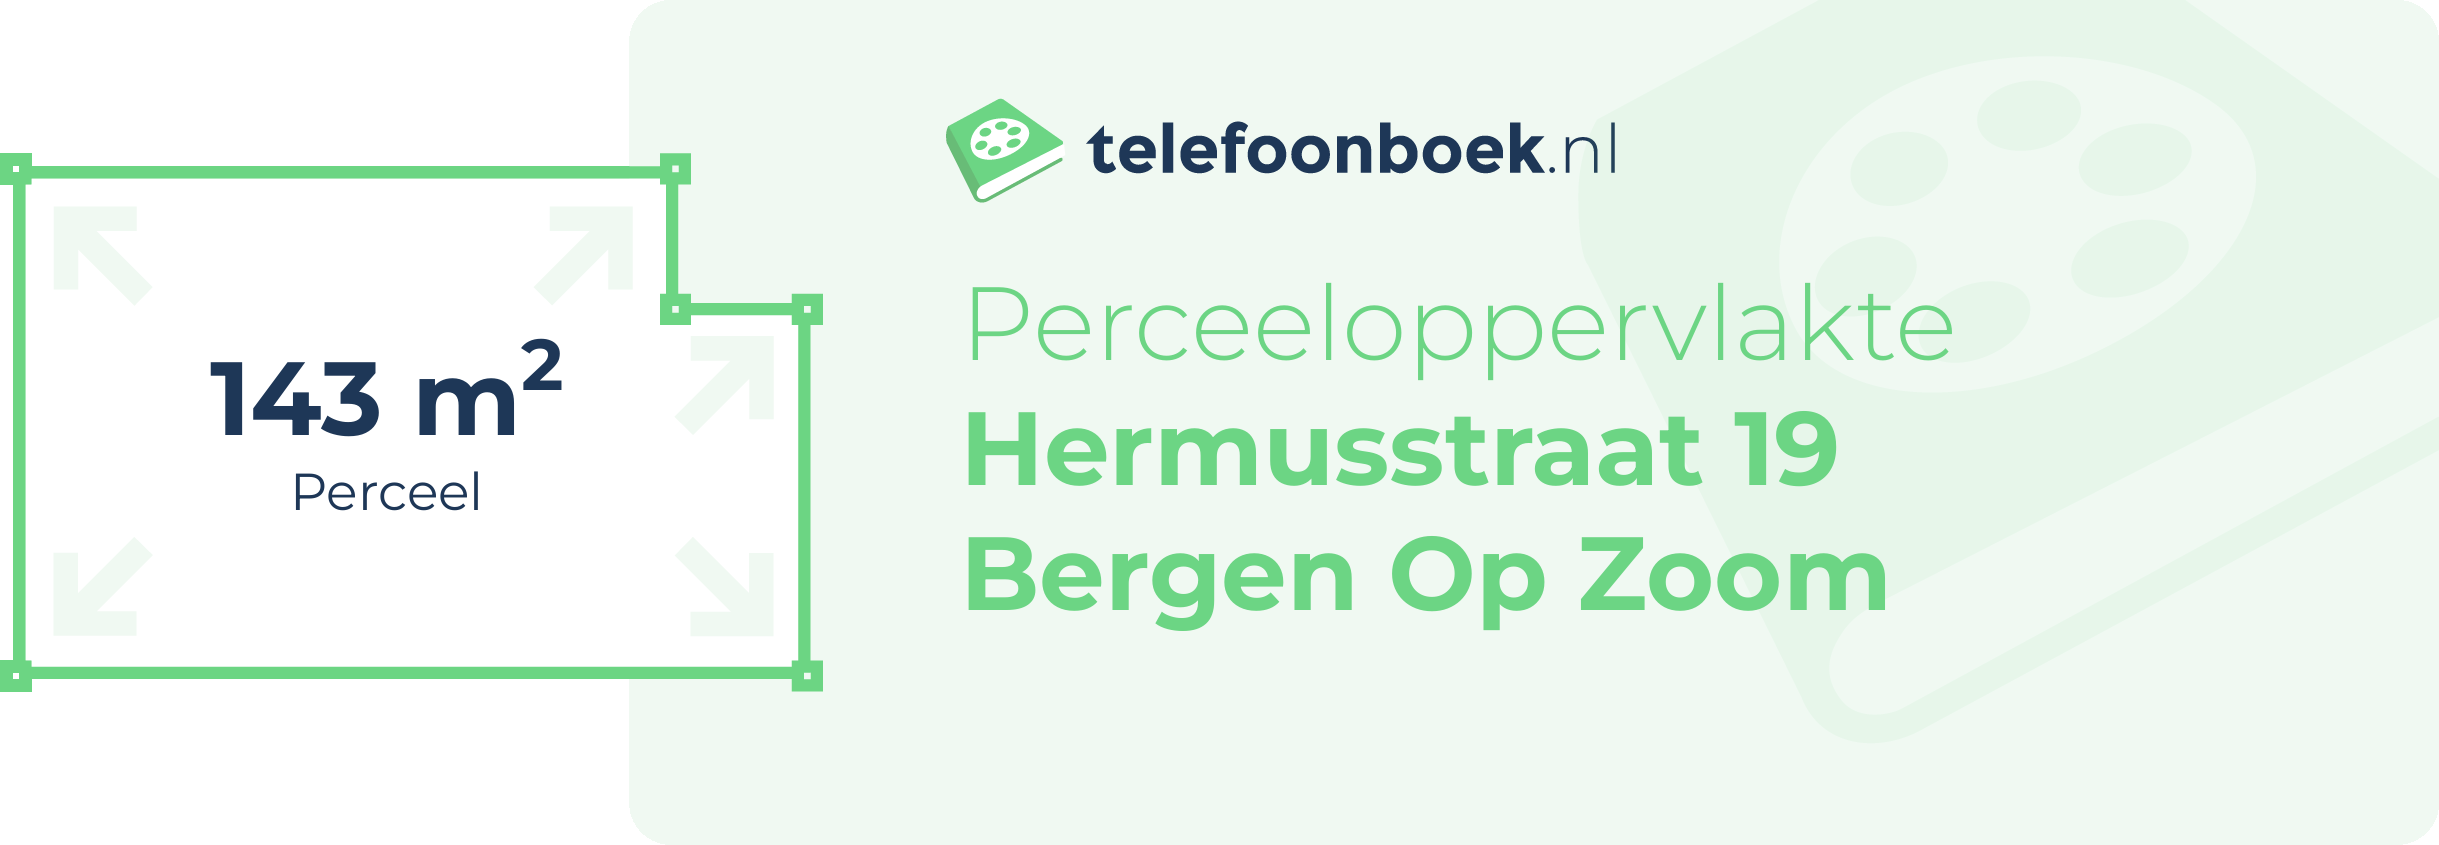 Perceeloppervlakte Hermusstraat 19 Bergen Op Zoom